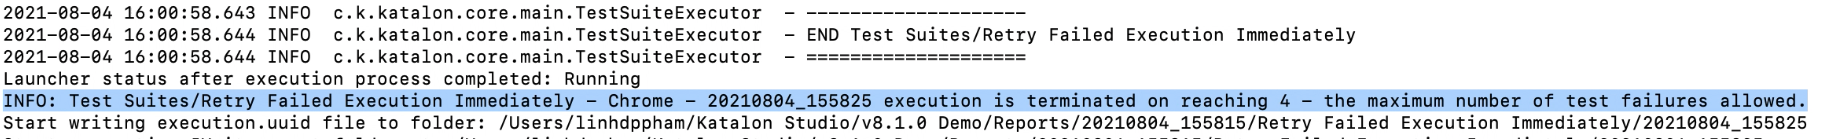 Stop-a-test-suite-execution-when-a-test-case-fails